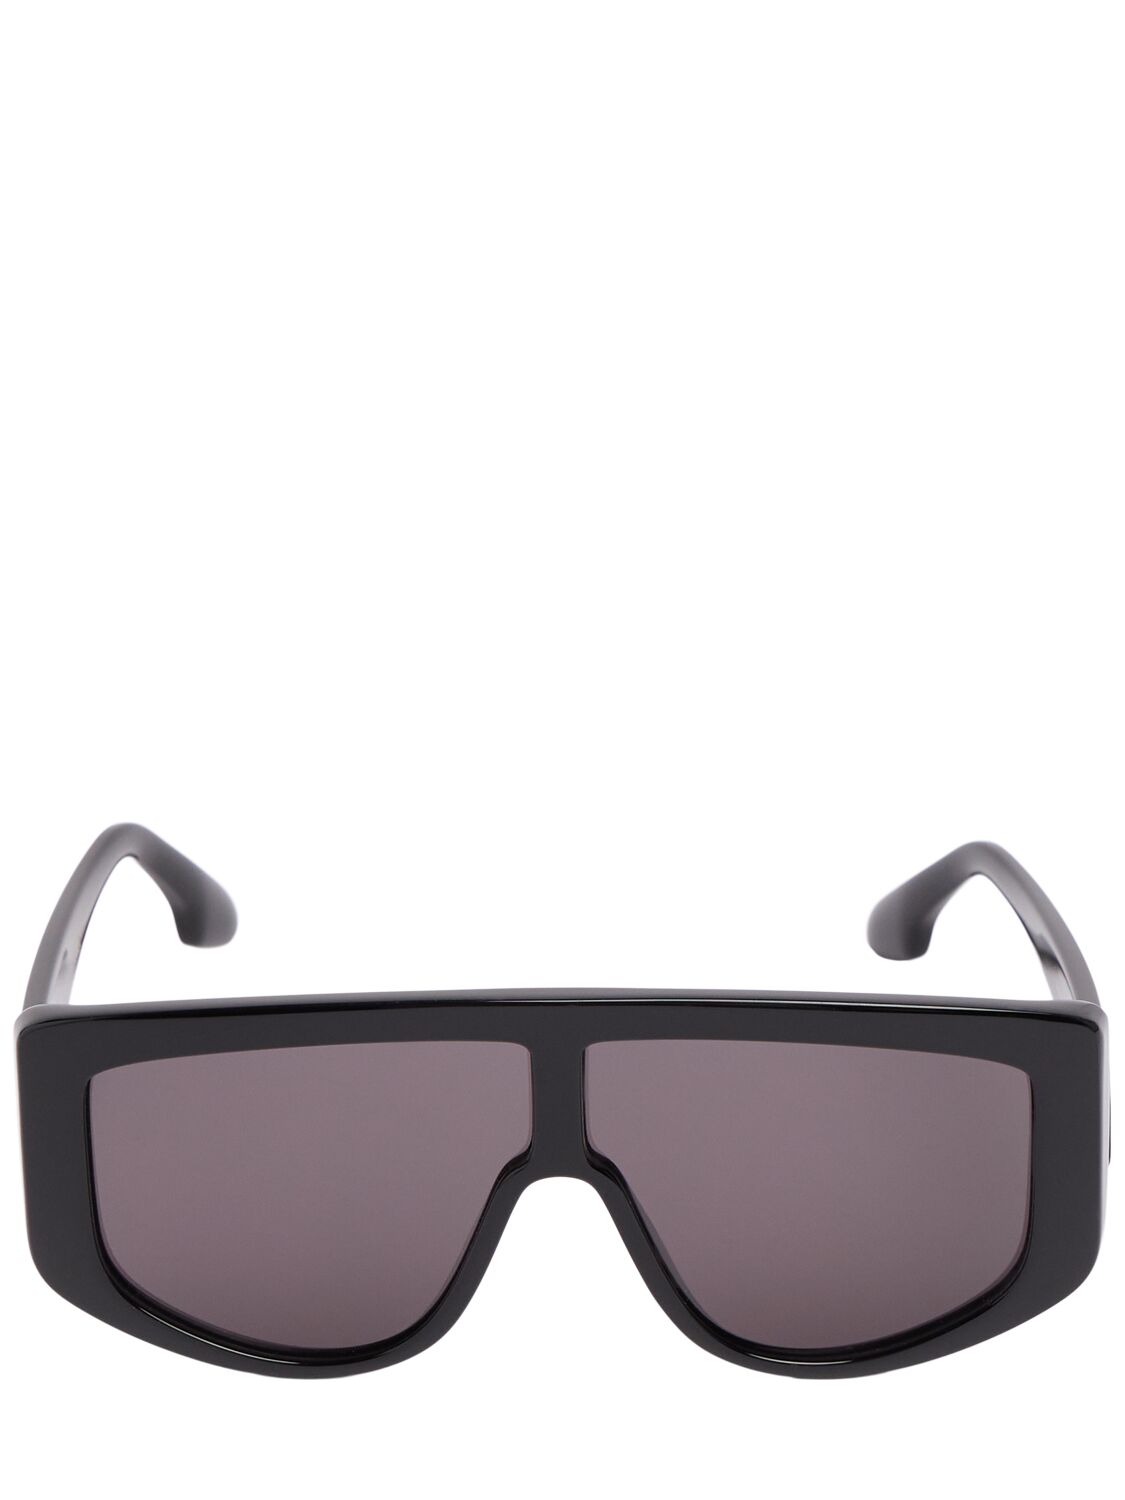 Victoria Beckham Denim Acetate Sunglasses In Black